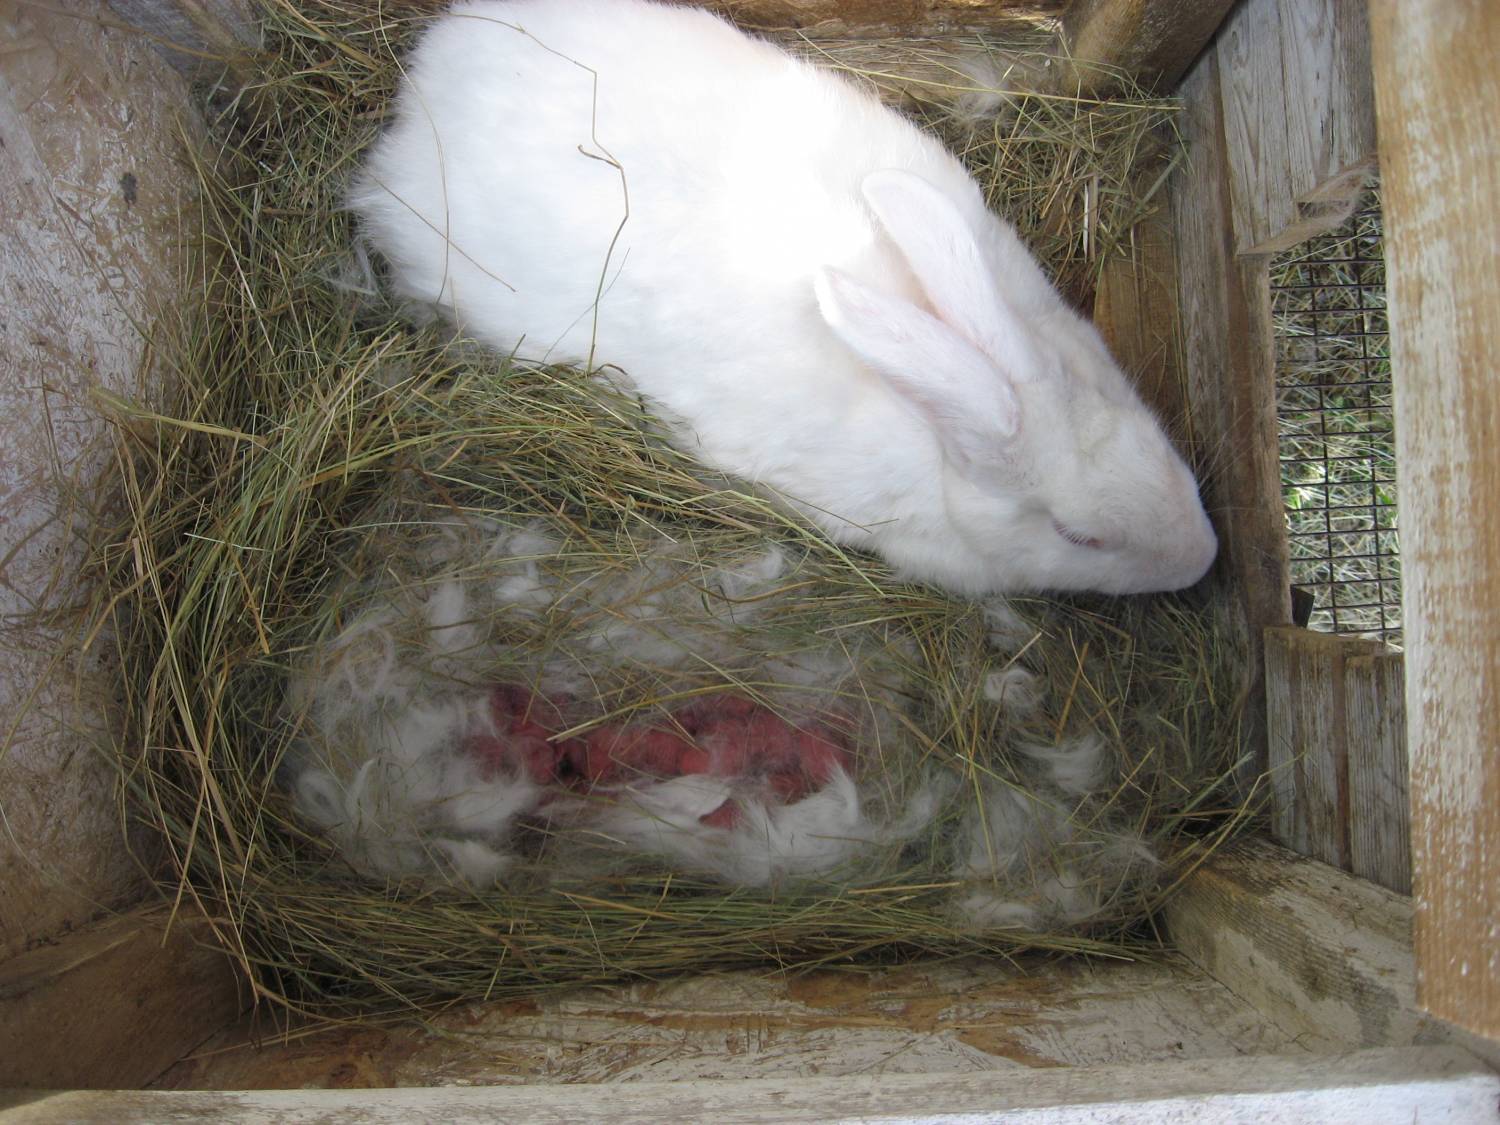 Почему крольчиха съедает, разбрасывает, убивает, давит, бросает и выкидывает из гнезда своих крольчат